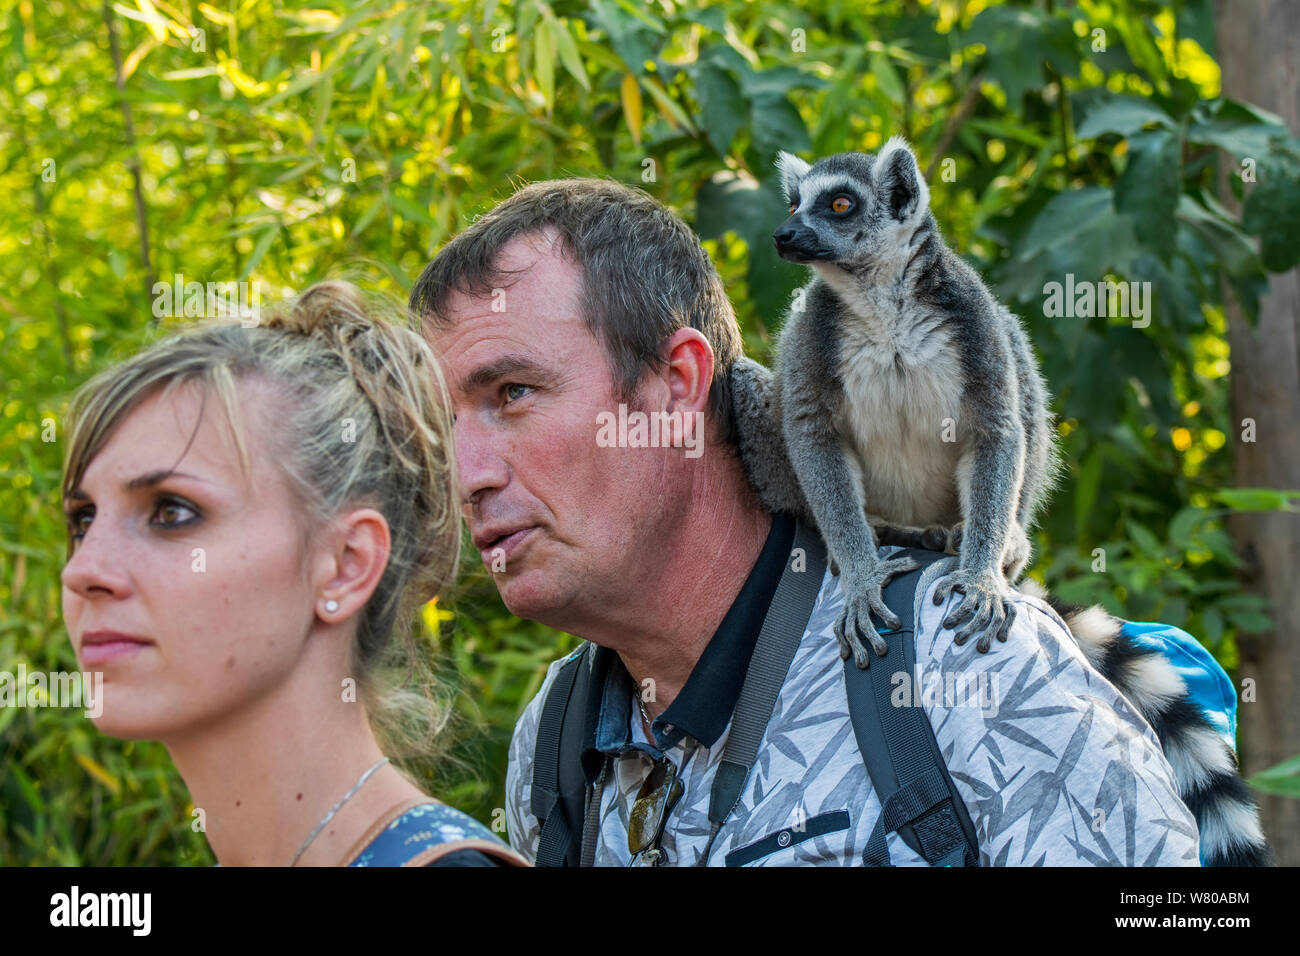 Besucher mit Tame Ring-tailed Lemur (Lemur catta) auf der Schulter im Zoo Stockfoto